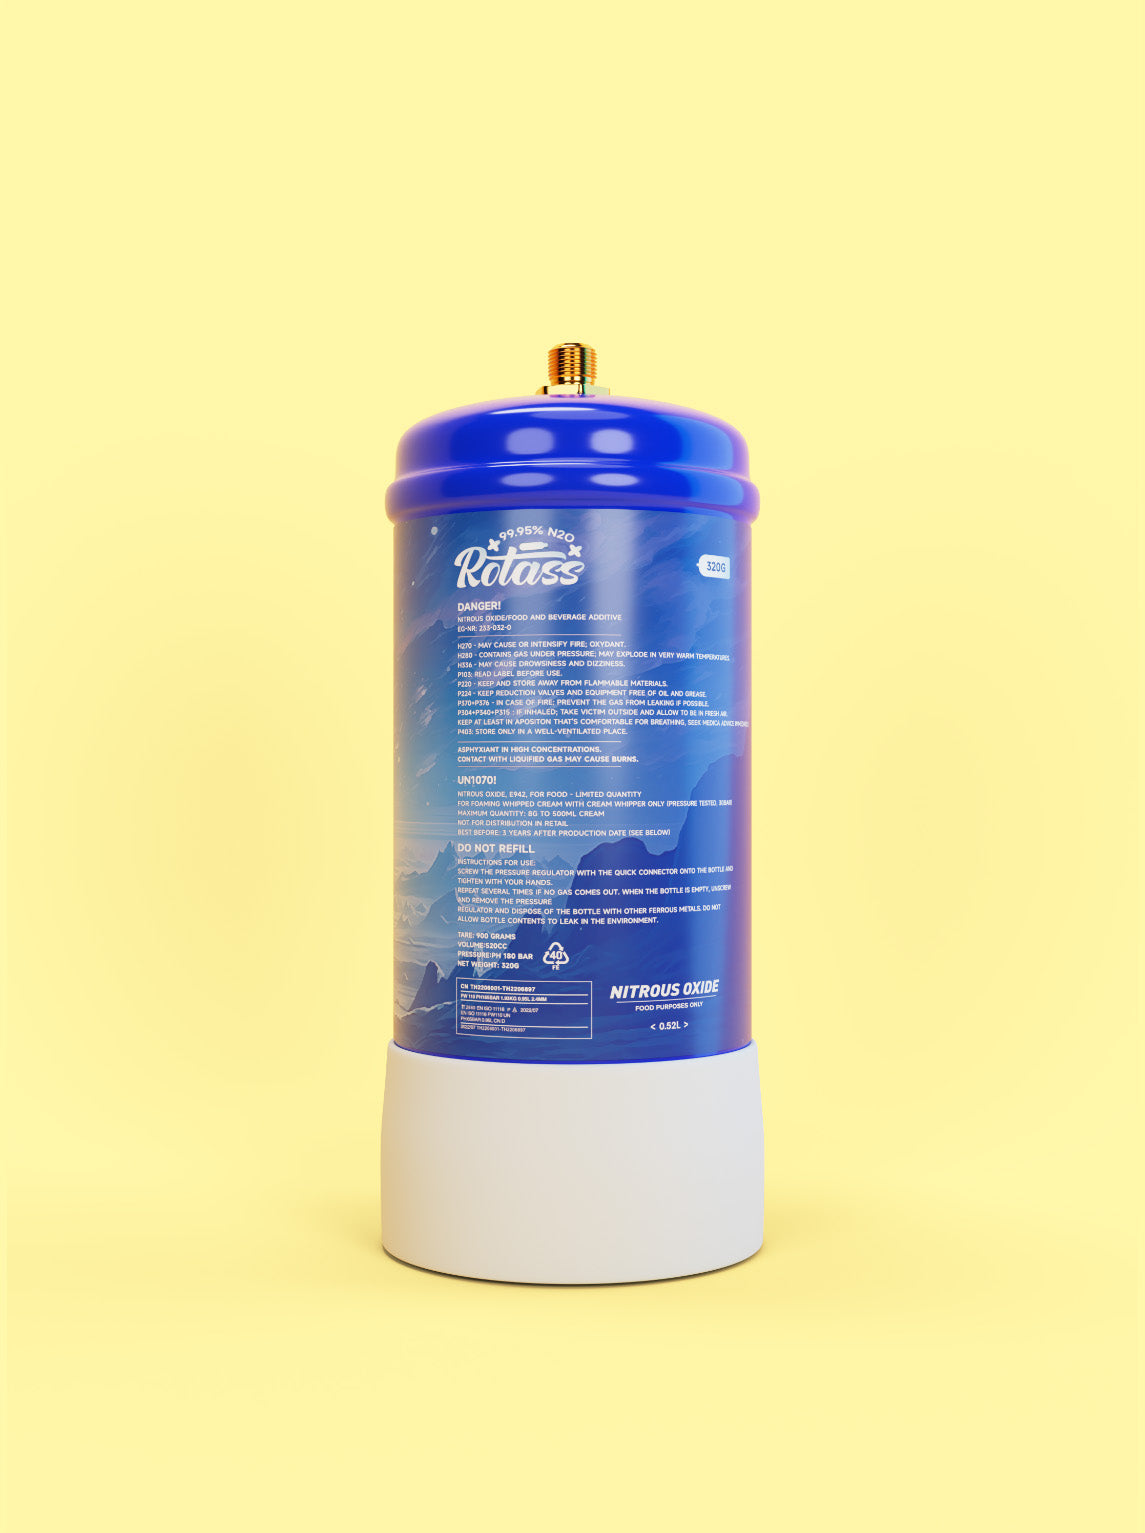 Rückansicht: Die Gasflasche ist im Antarktis-Style designed, mit dem weißen Logo "Rotass" 320g. Der Hintergrund ist hellgelb.